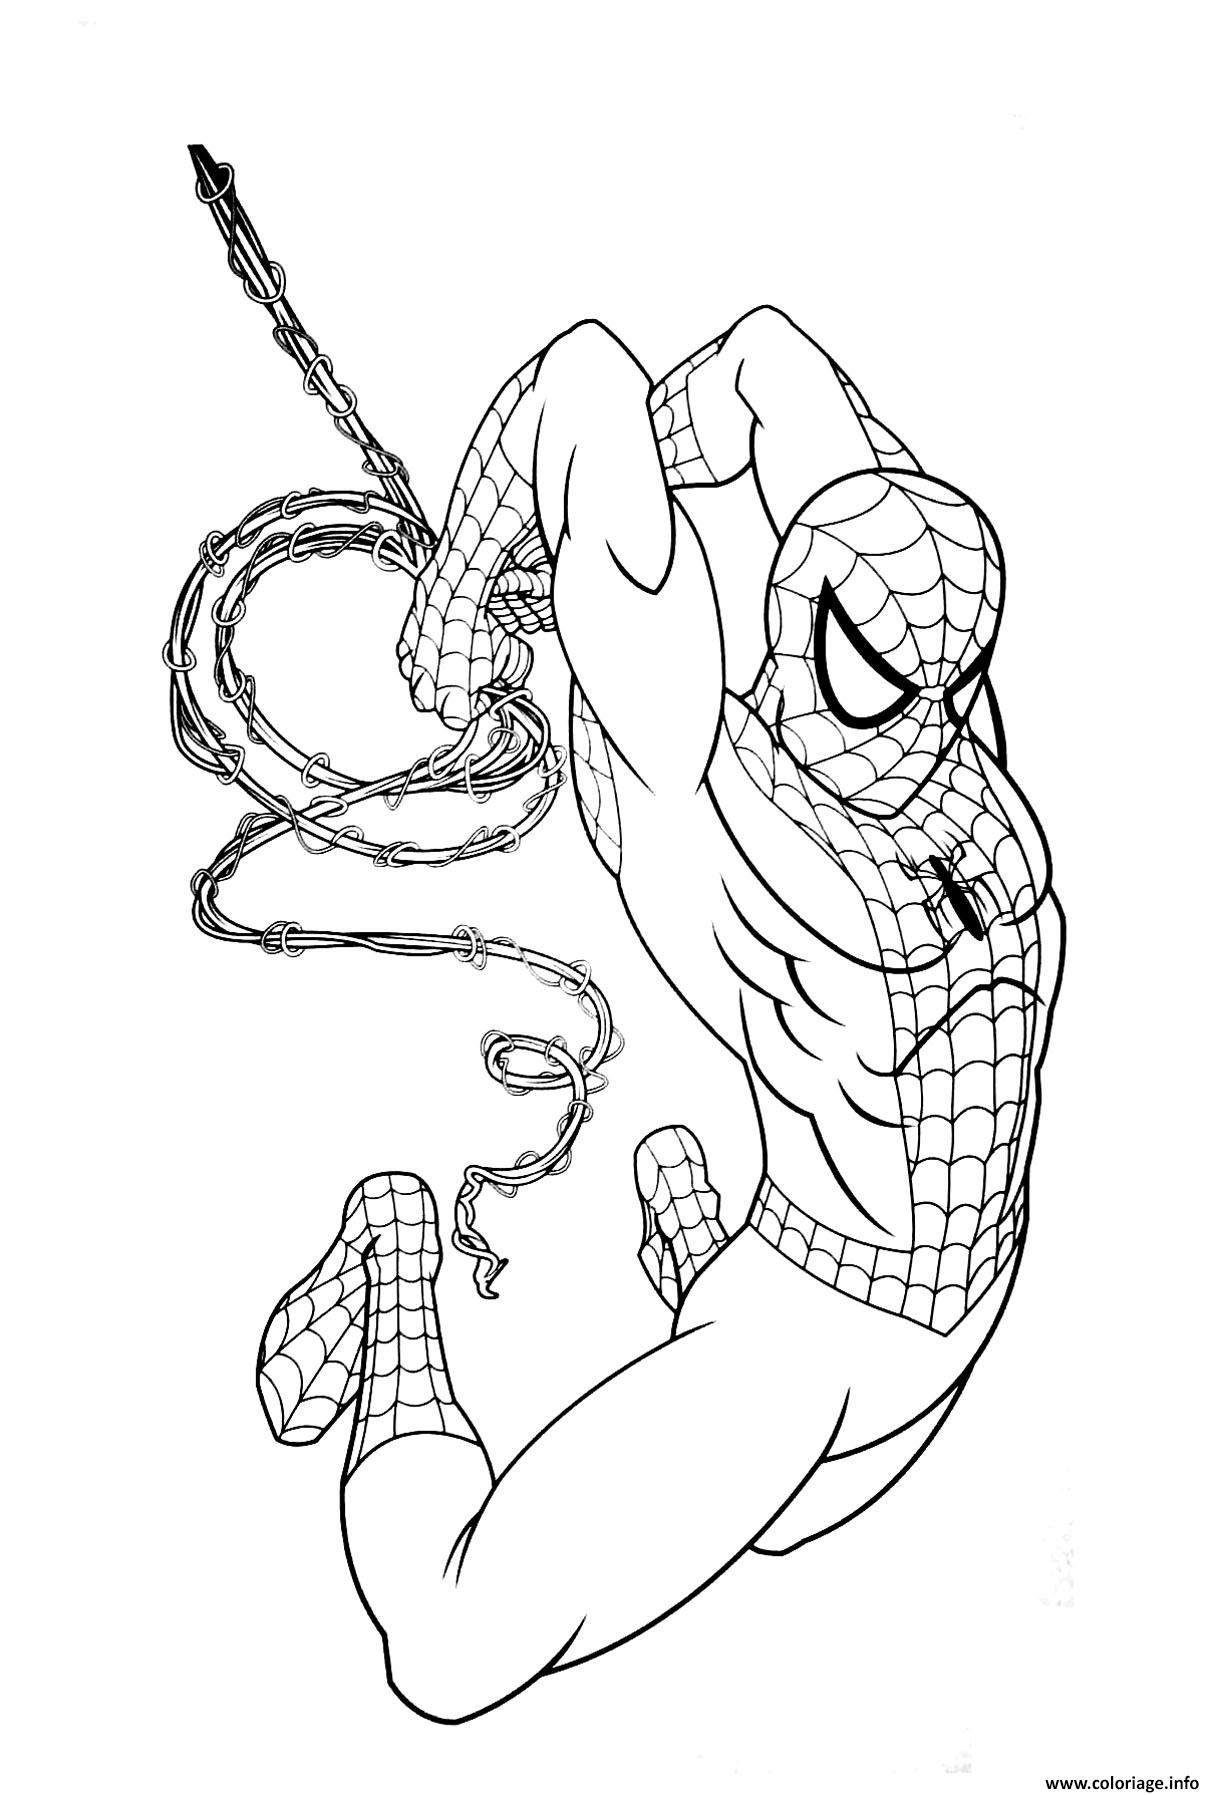 Coloriage garcon super heros marvel spiderman 